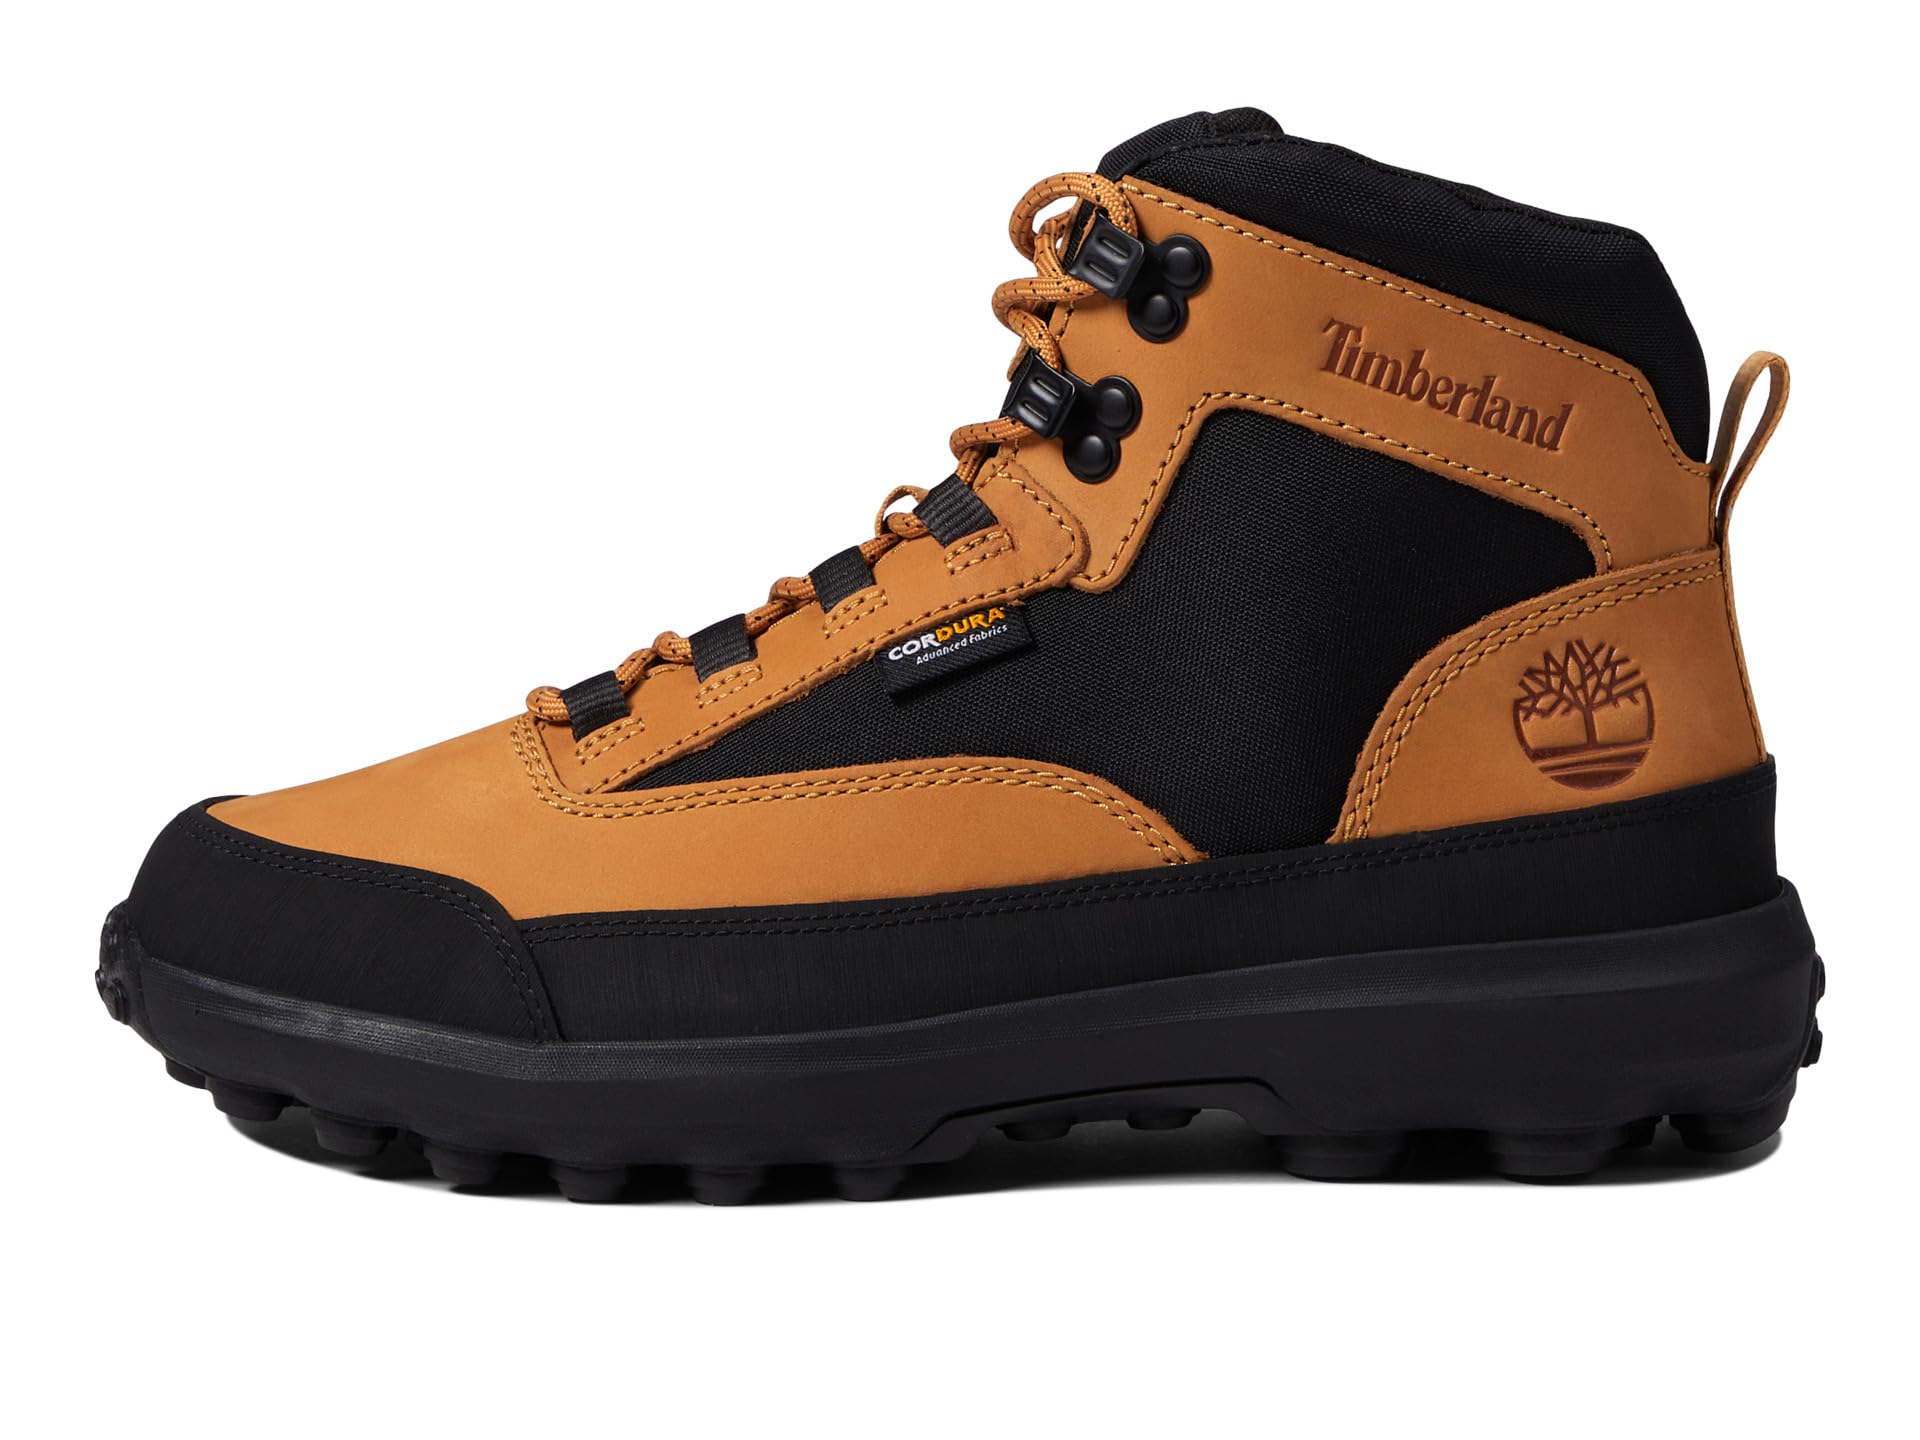 Треккинговые ботинки Timberland Converge L/F Mid, коричневый/черный